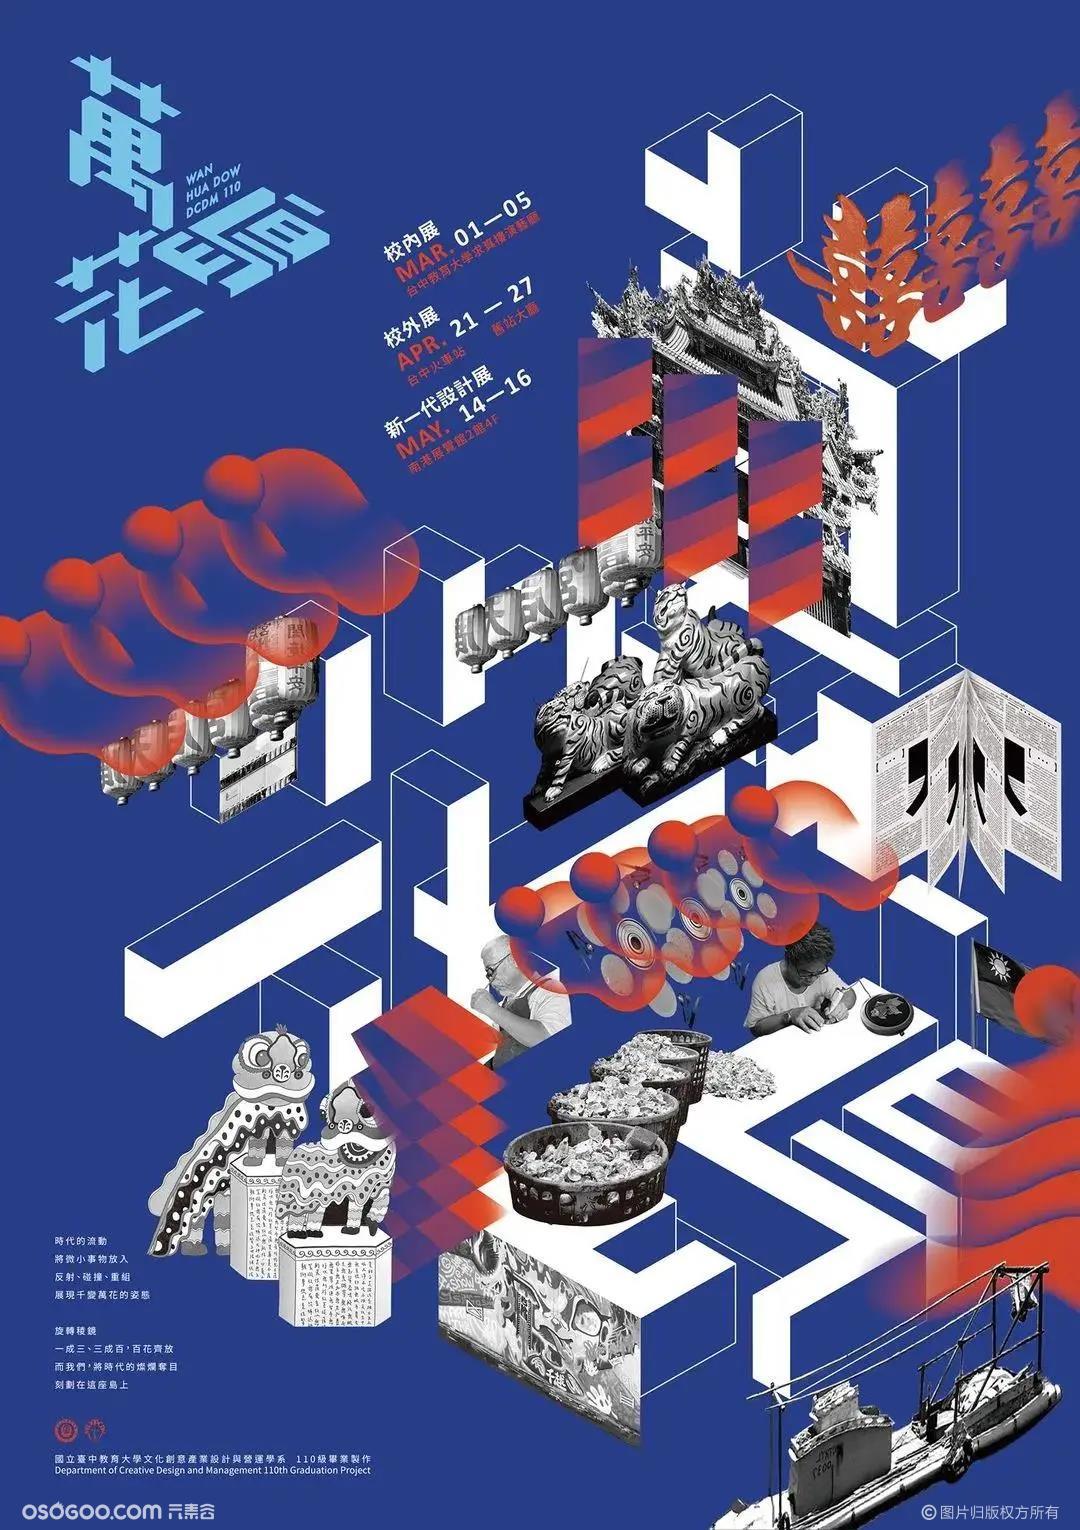 台湾毕业展的海报，来看看吧